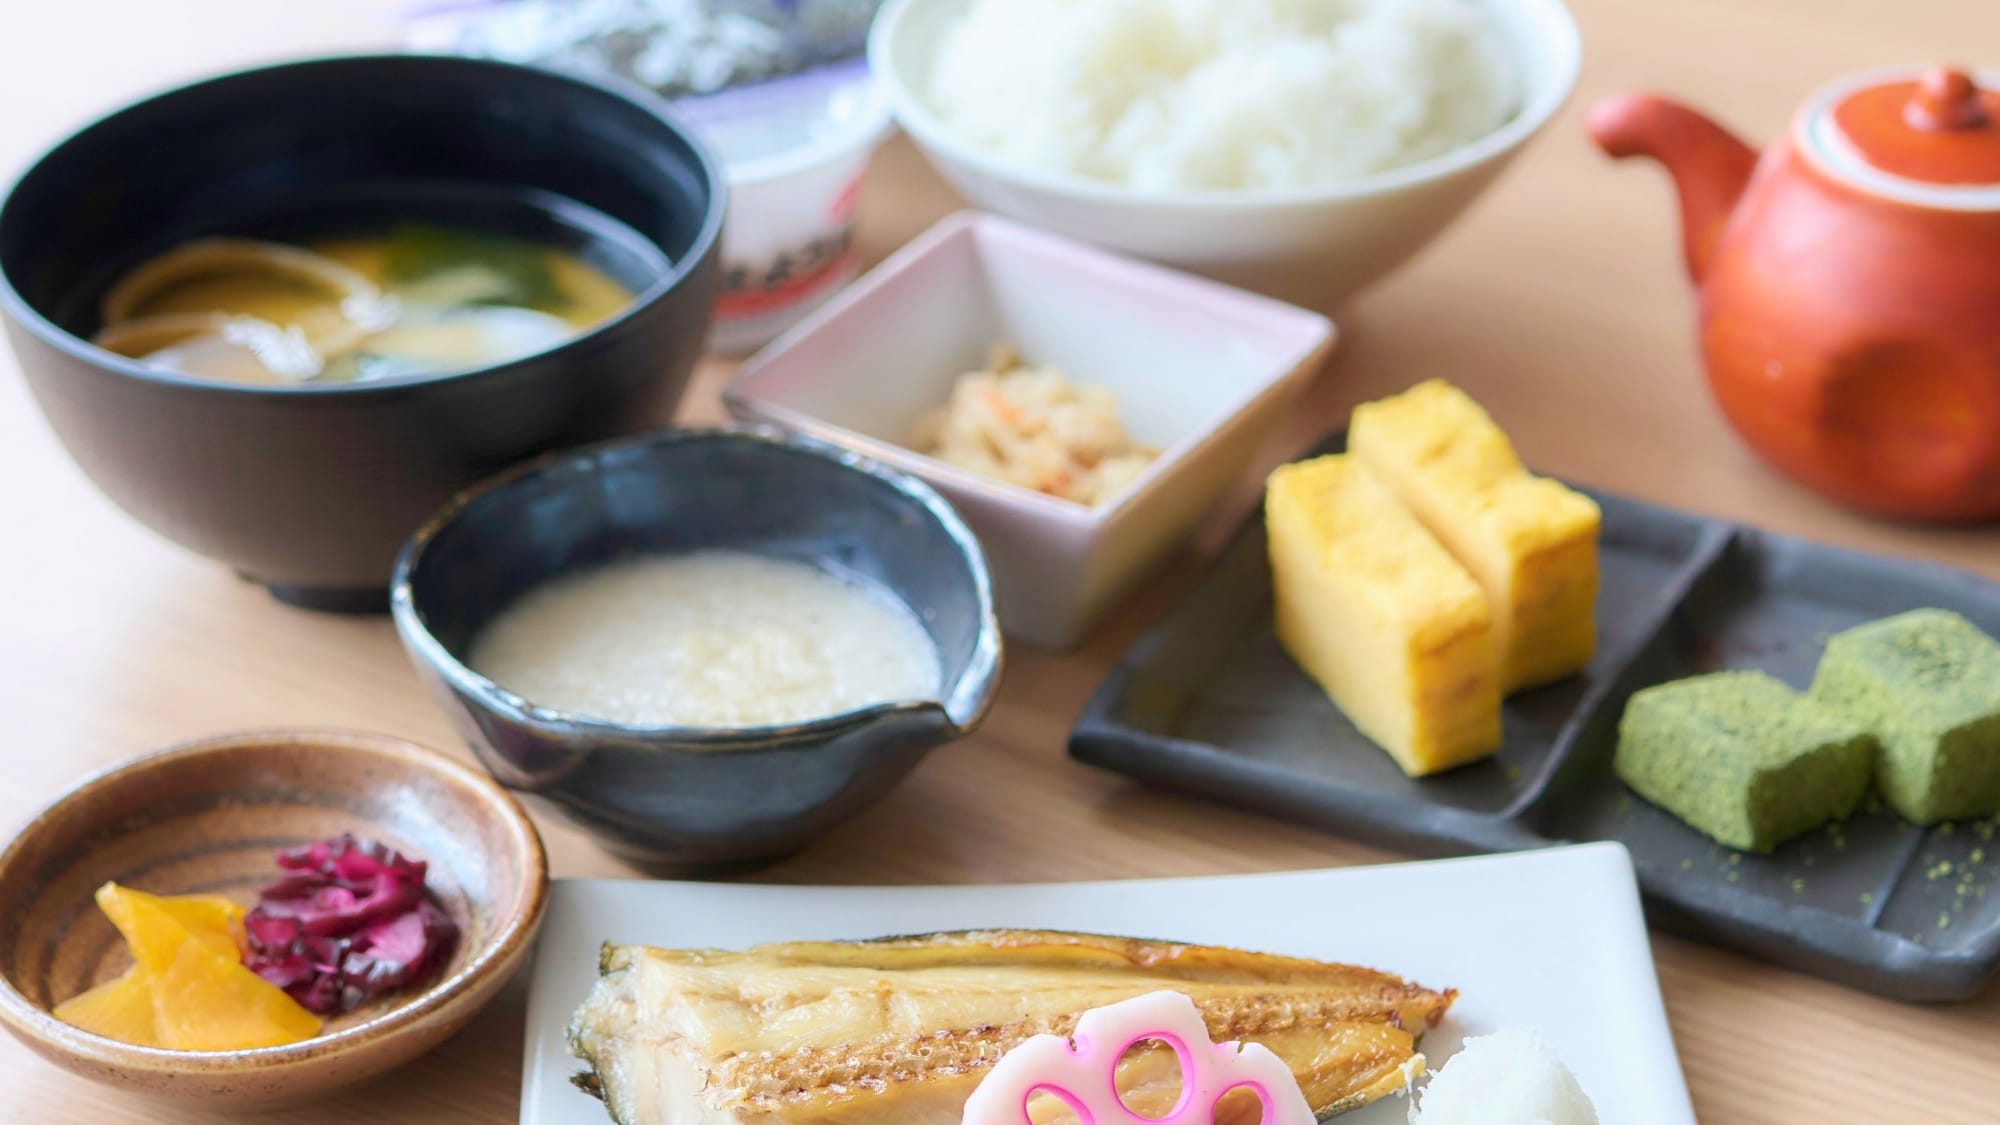 일본식 조식：매일 아침 볶은 밥은 「매우 맛있다!」라고 단골님으로부터도 평판입니다. ※사진은 모두 이미지입니다.